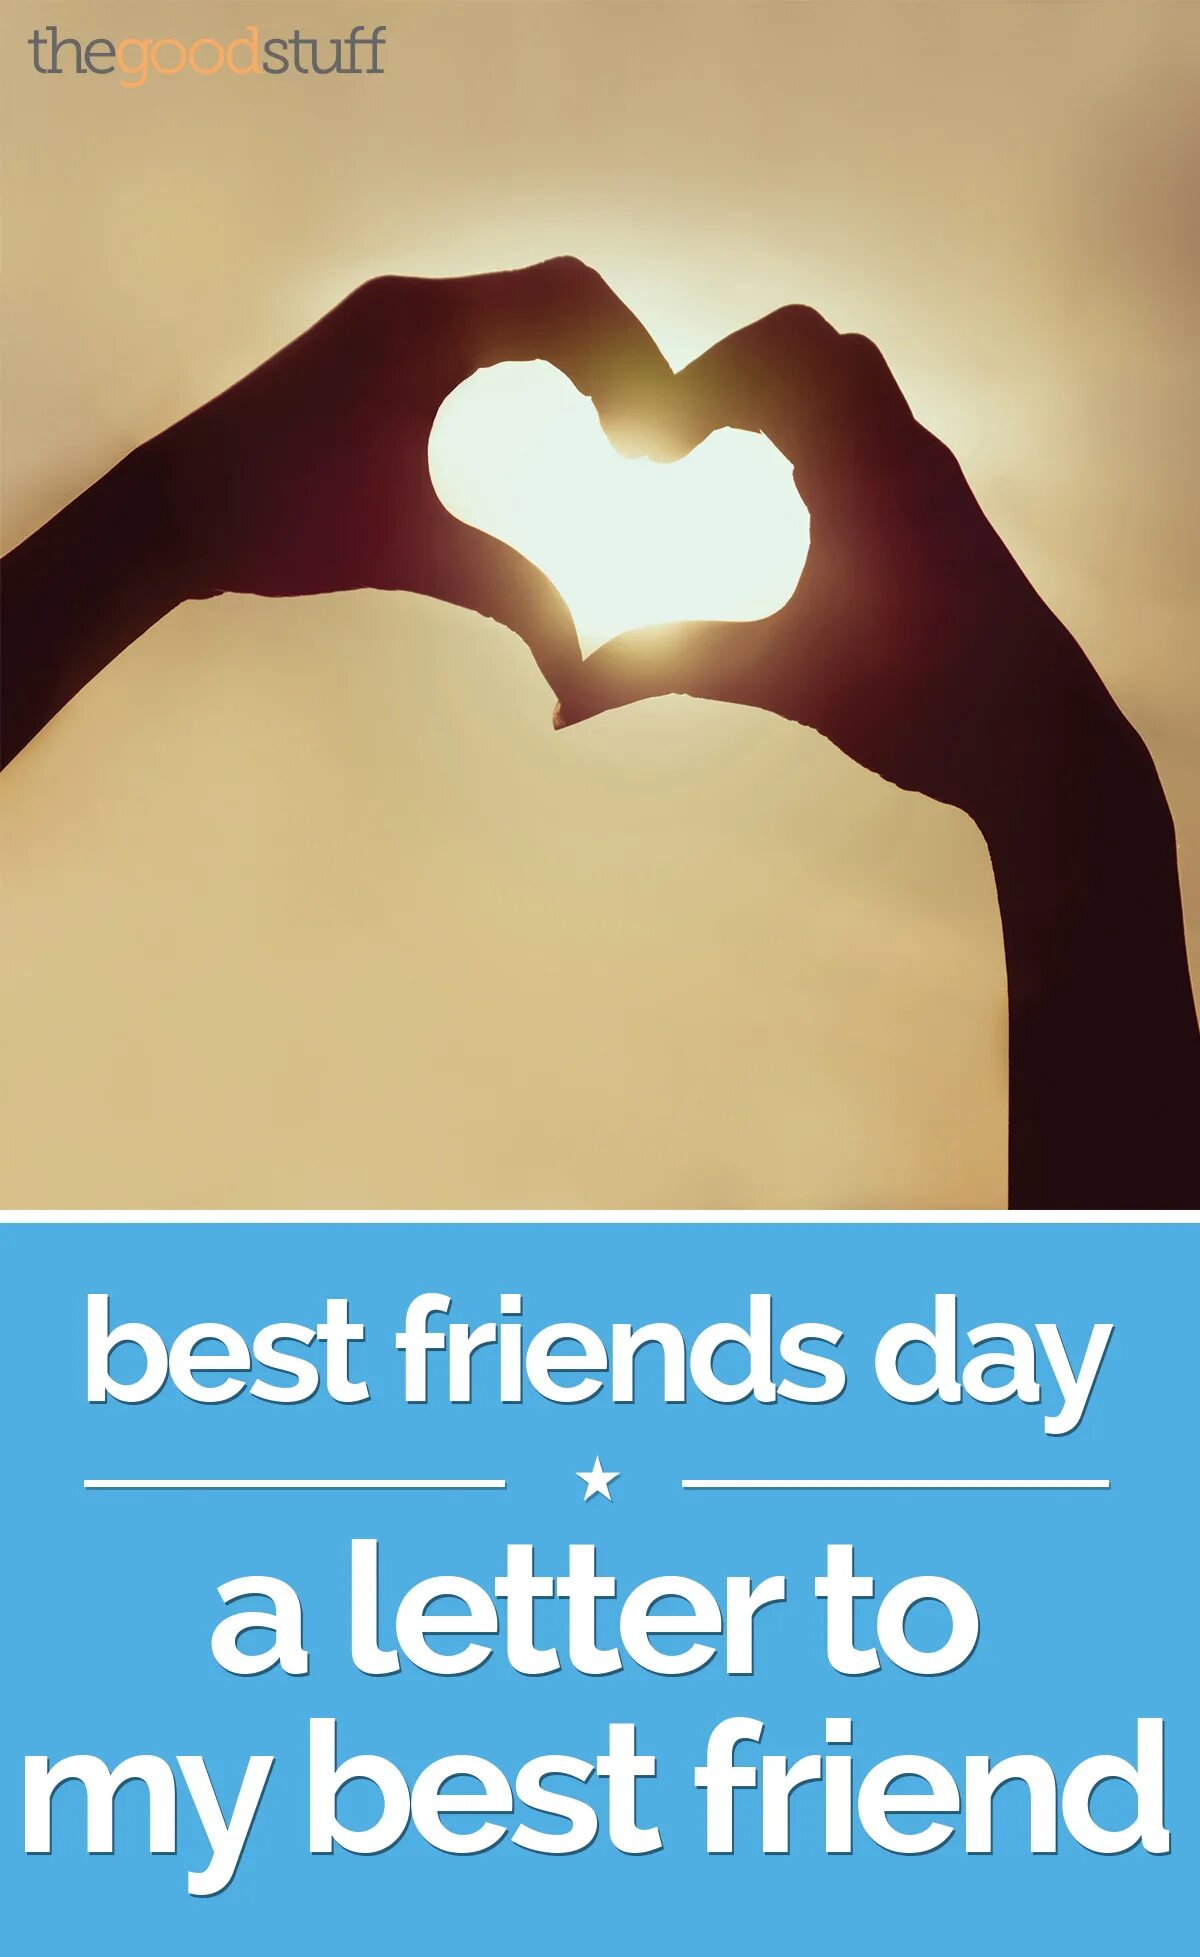 Best friends обновление. Friends Day. Best friends Day. National best friends Day. My friends.